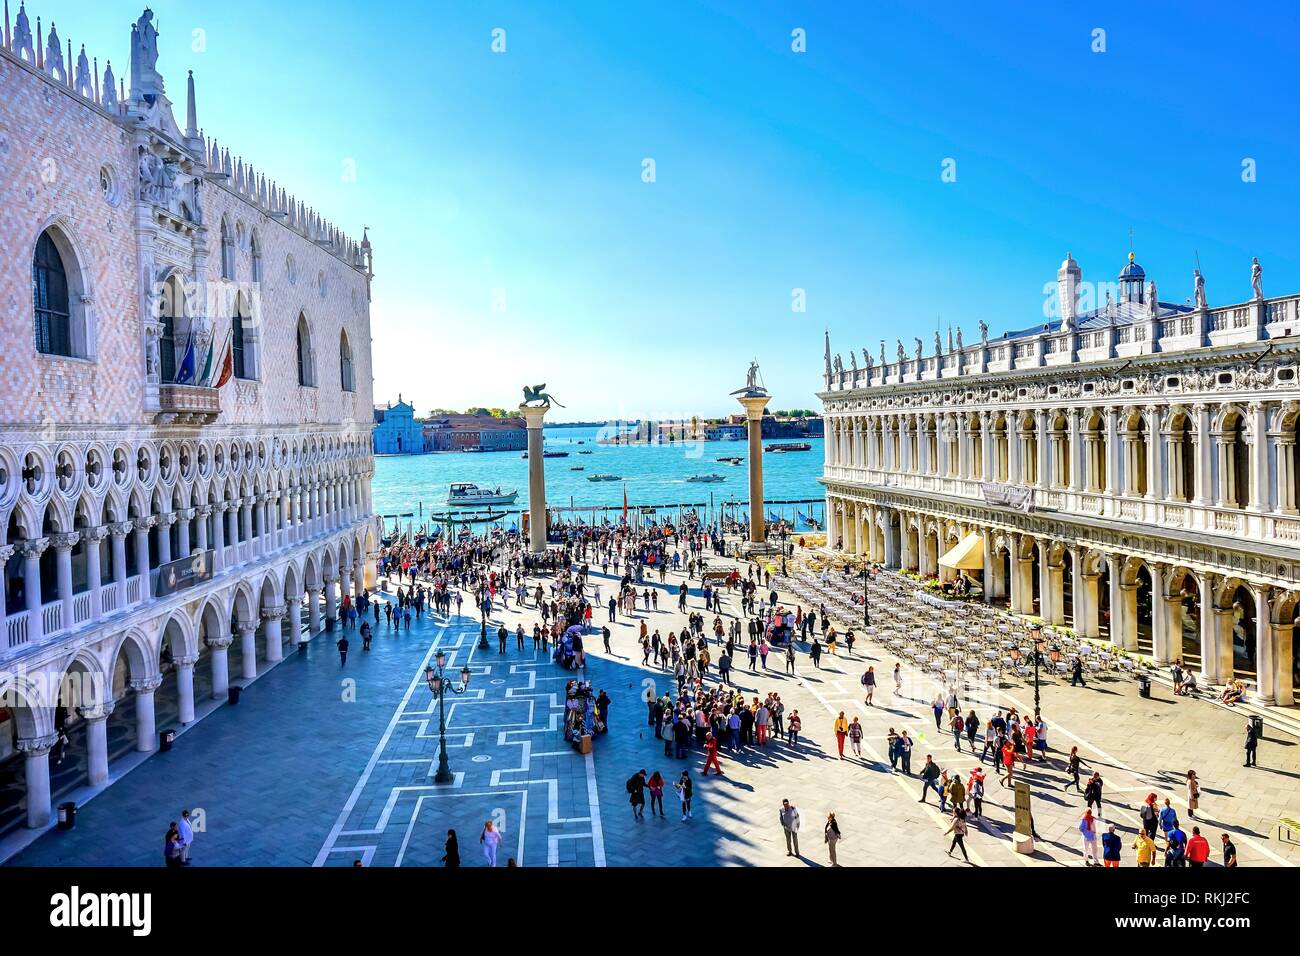 Palacio Ducal Grand Canal Piazza San Marco, la Plaza de San Marcos en Venecia. Entrada a la famosa Plaza de San Marcos. Foto de stock